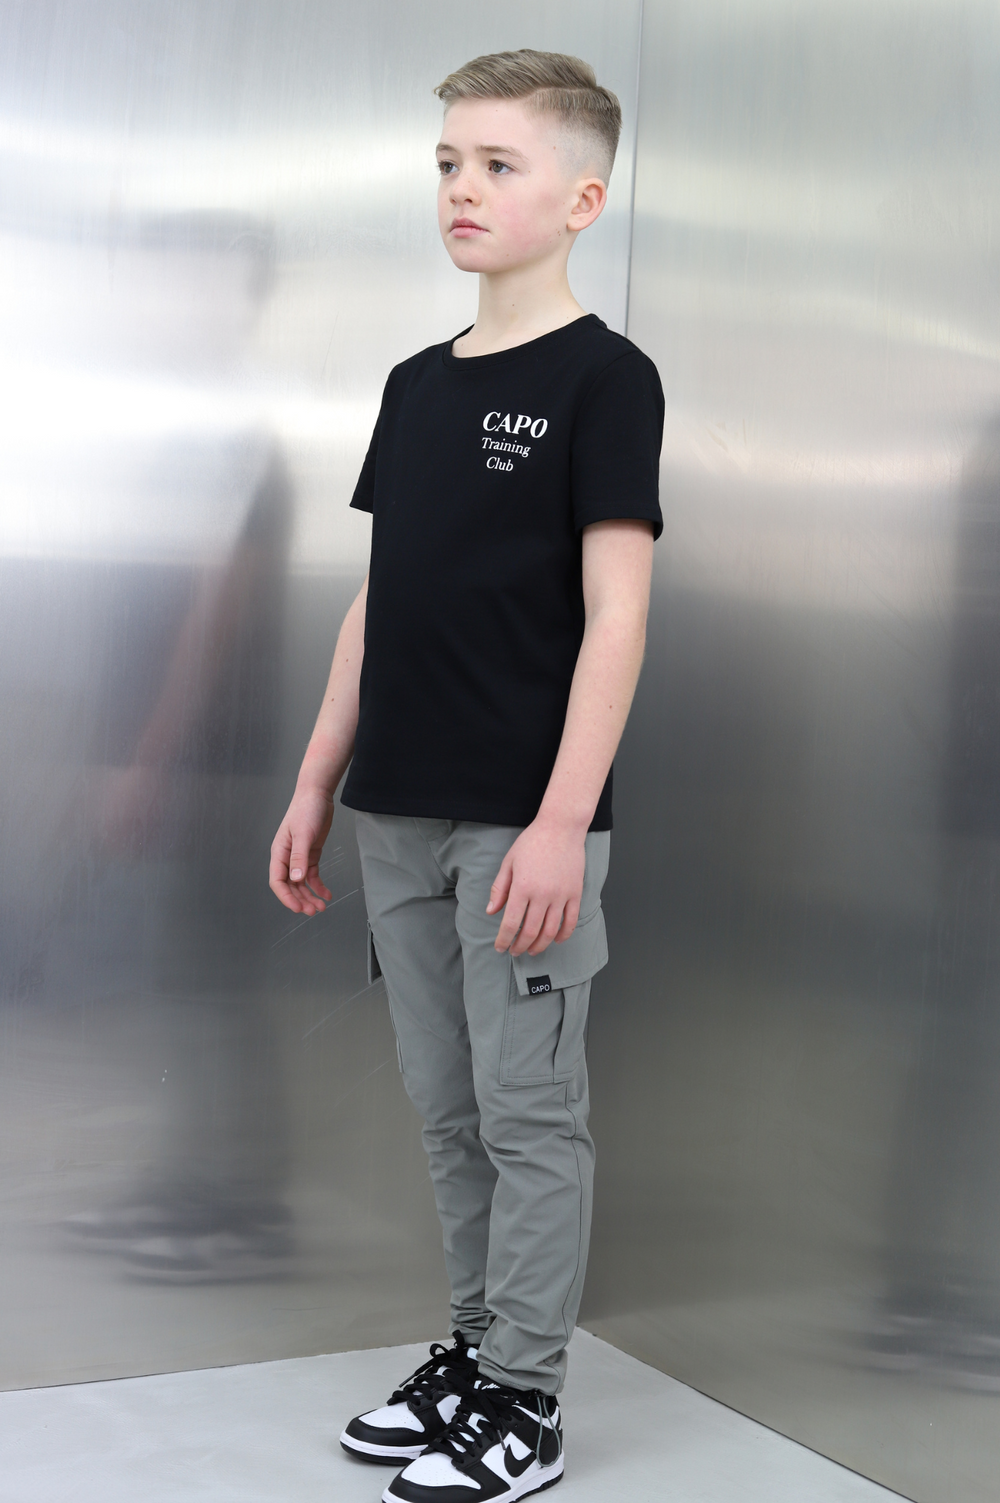 Capo KIDS - TRAINING Club T-Shirt - Black